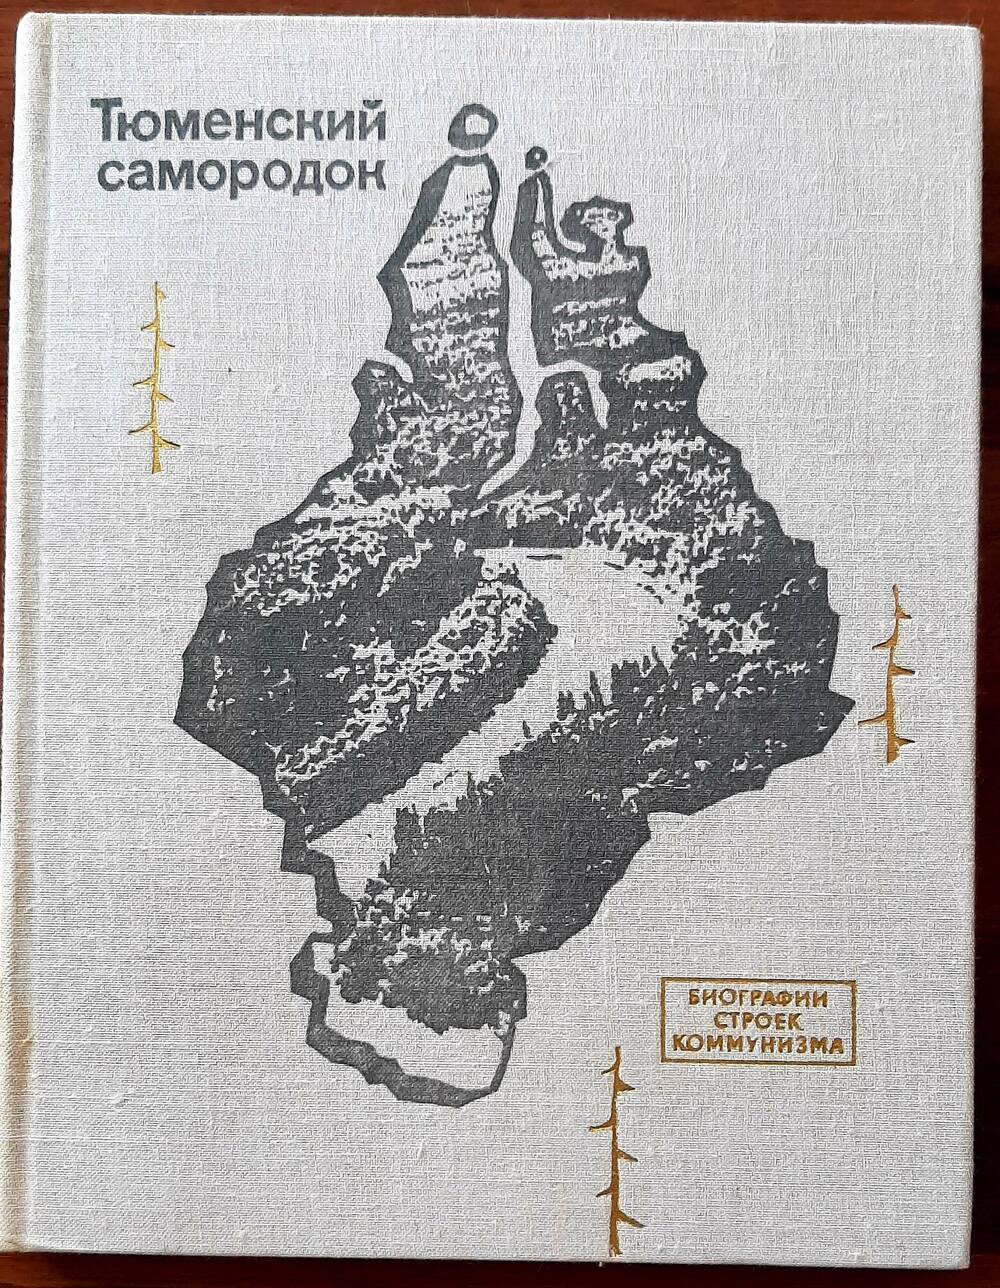 Книга «Тюменский самородок» с автографом С.Верникова –одного из авторов книги